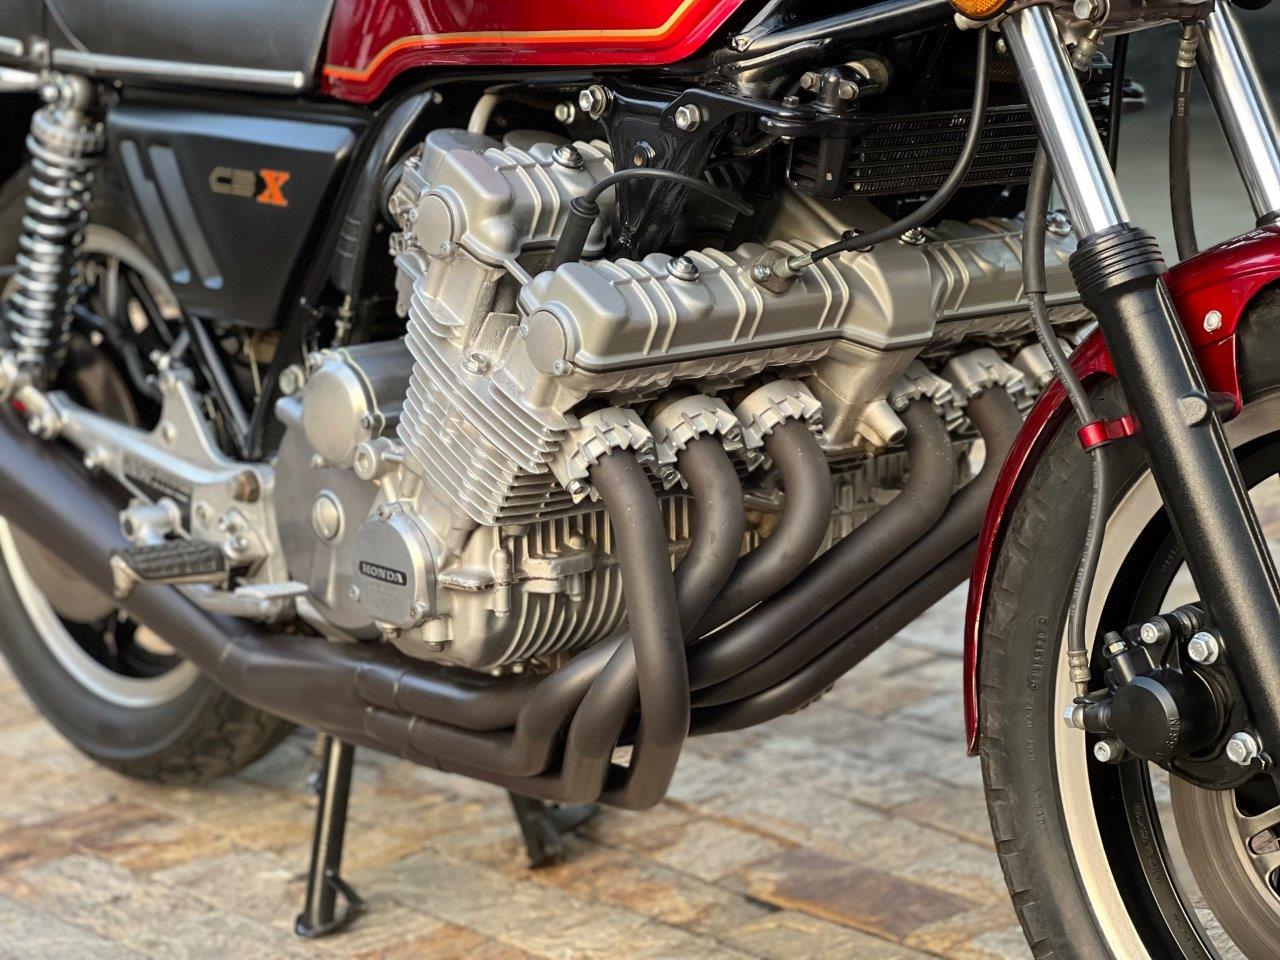 Tudo sobre a Honda CBX 1050: A Lenda que Marcou Época - Retornar -  Transformando Vidas